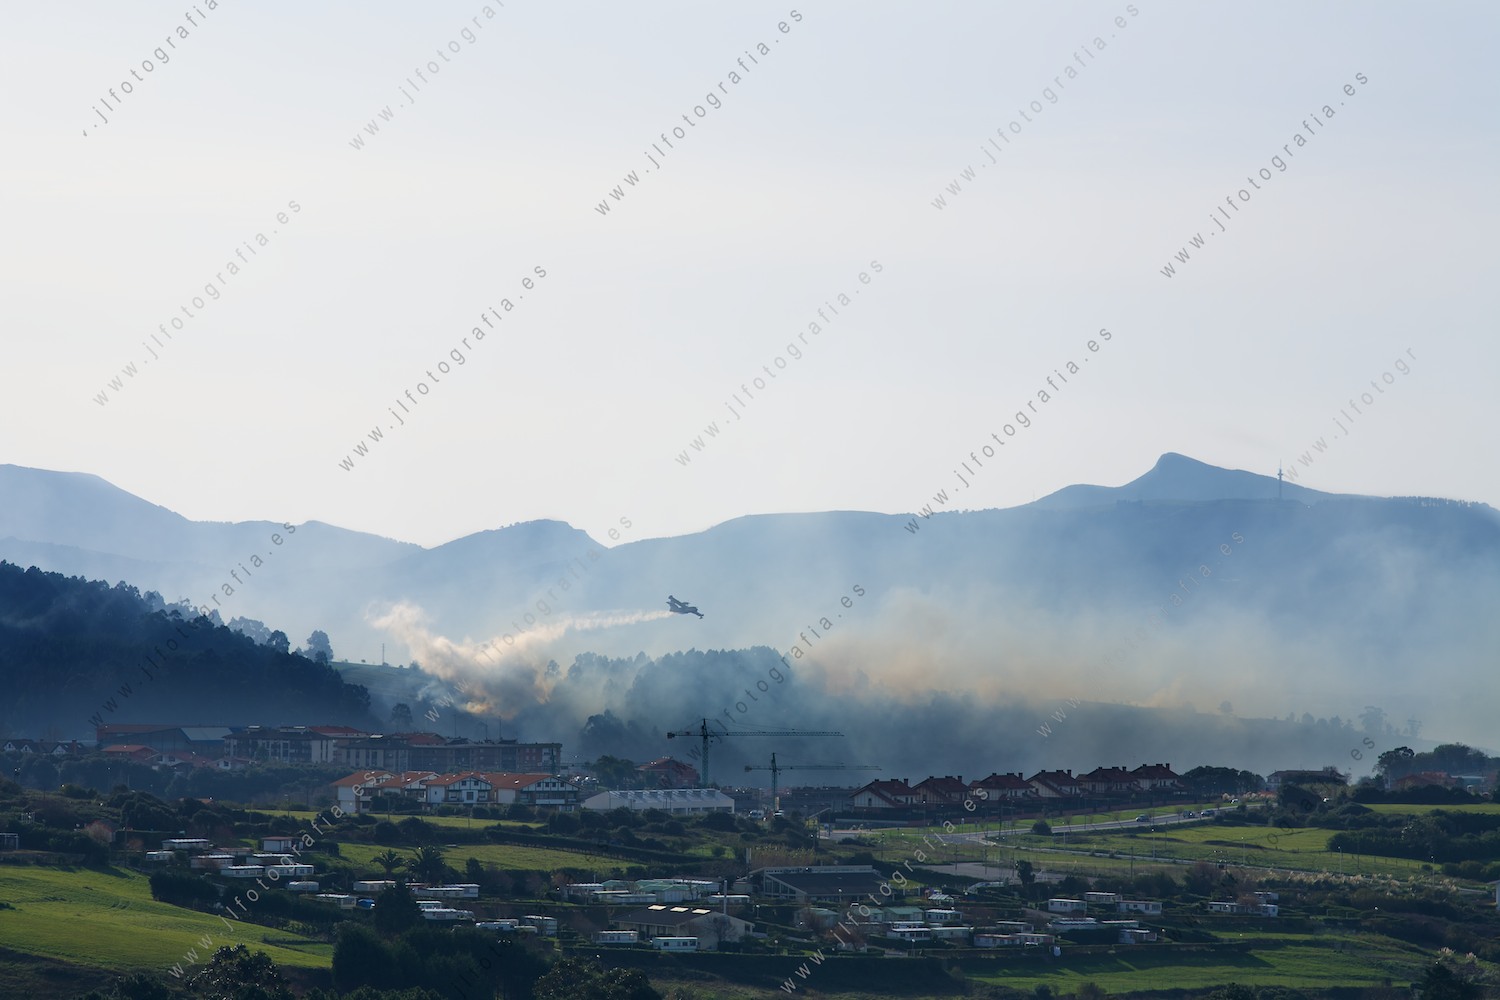 El pueblo de Berango, Getxo, con la humareda del incendio en los bosques próximos mientras el hidroavión descarga el agua